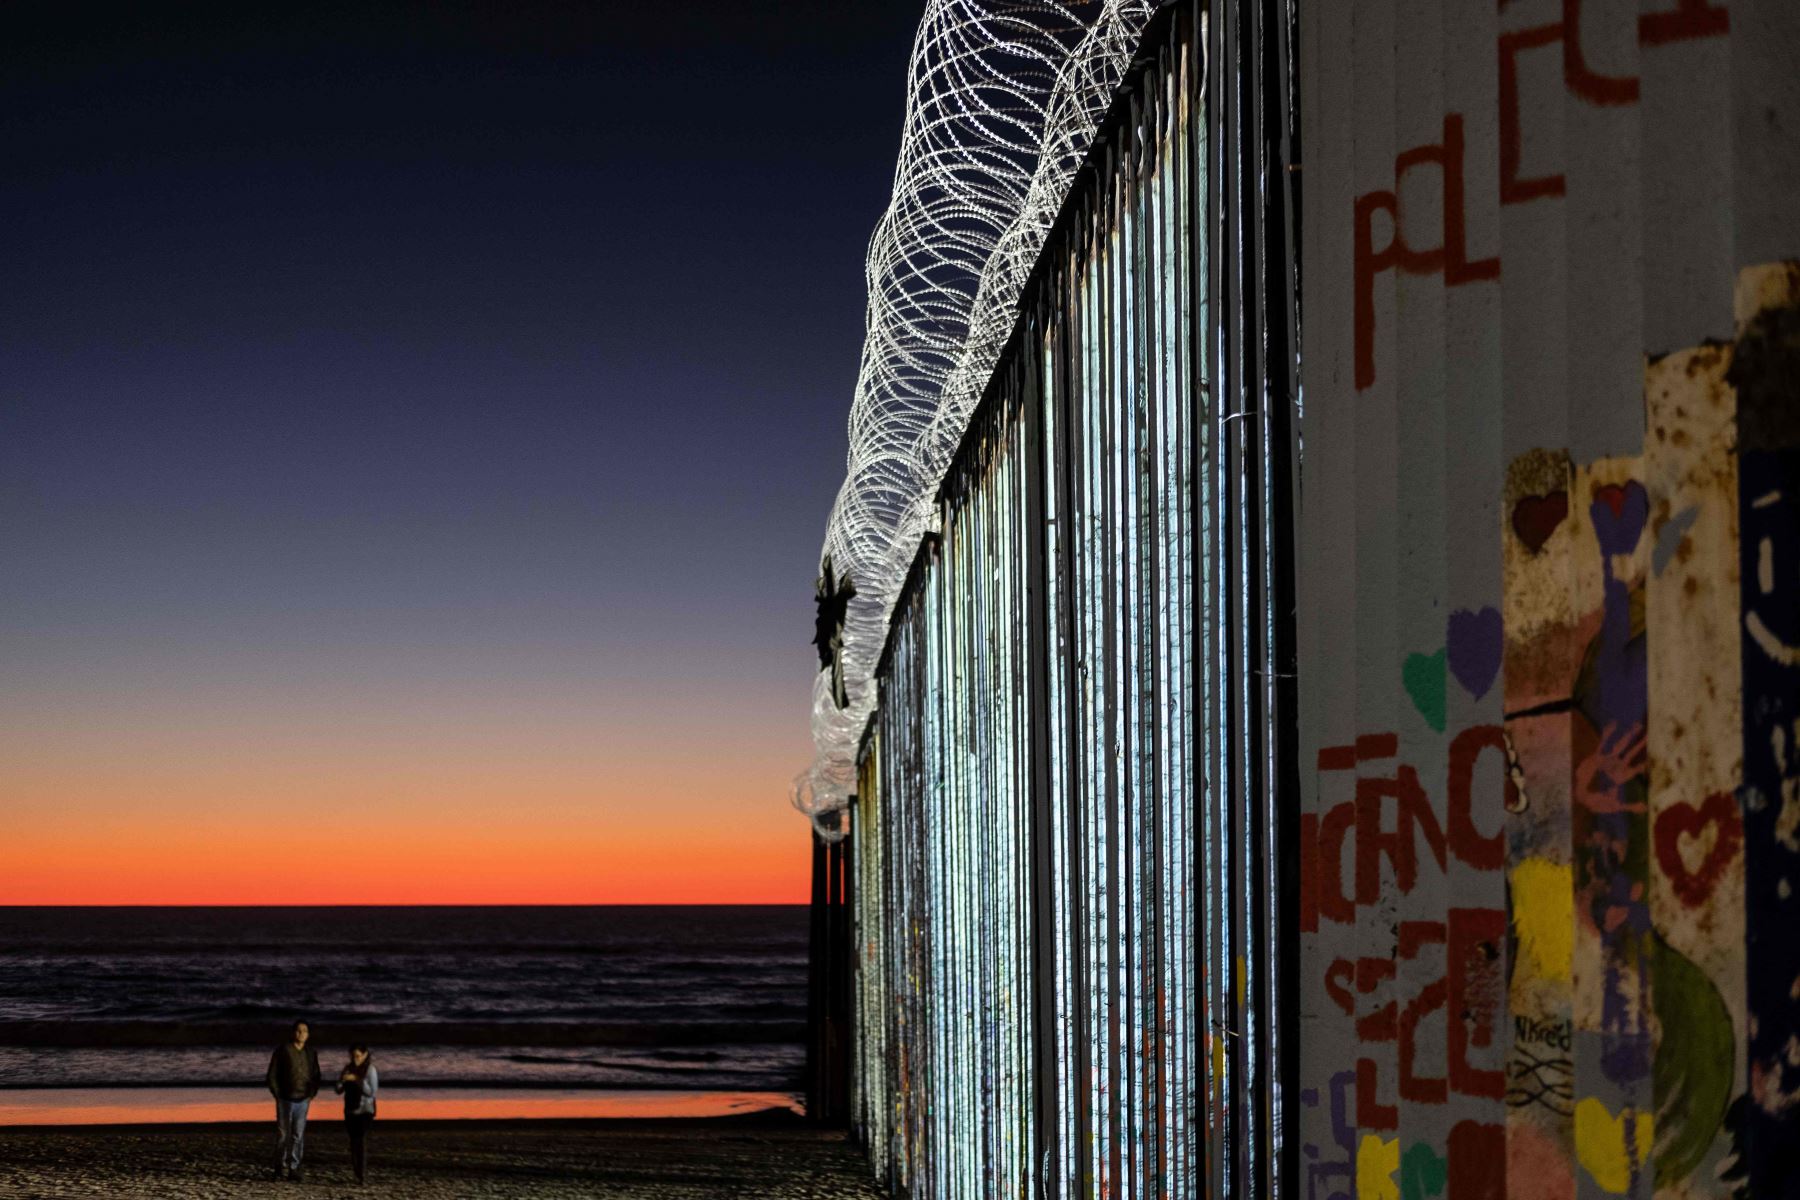 La frontera de México en Playas de Tijuana, estado de Baja California, México, el 2 de enero de 2018 Foto: AFP